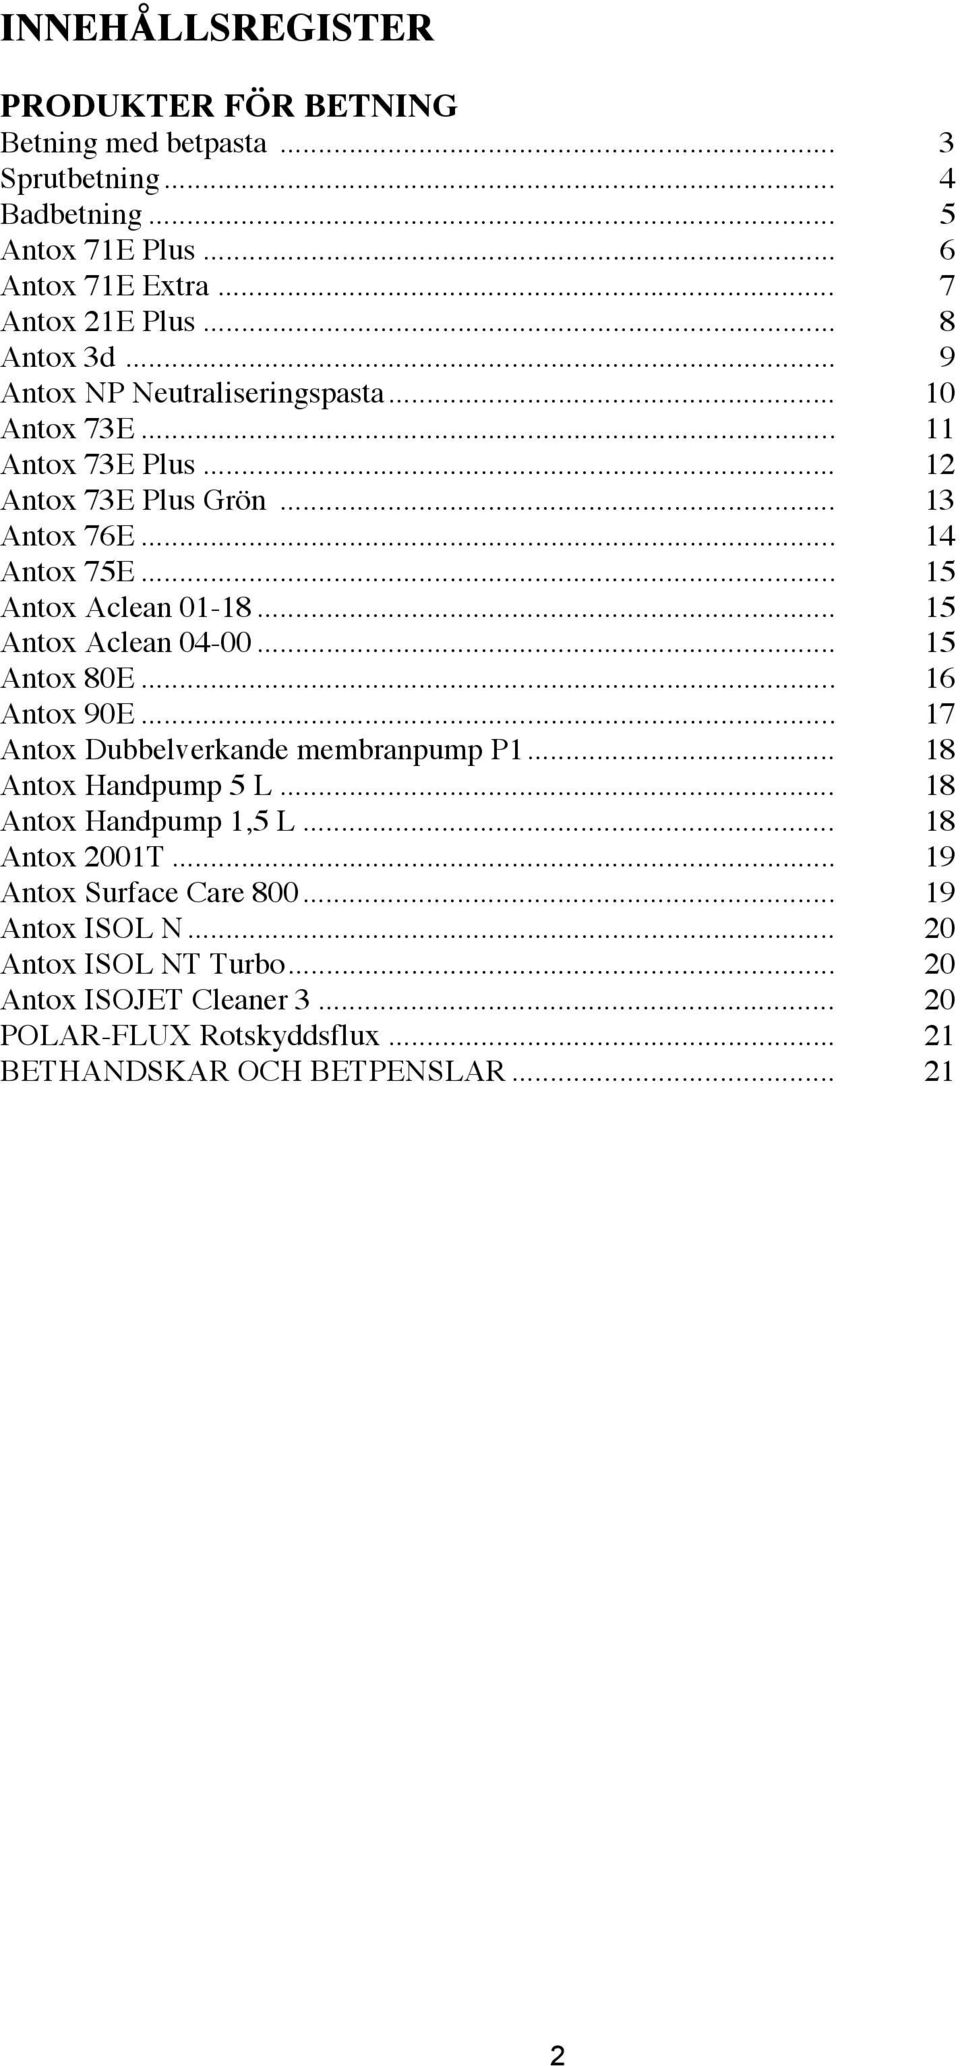 .. 15 Antox Aclean 04-00... 15 Antox 80E... 16 Antox 90E... 17 Antox Dubbelverkande membranpump P1... 18 Antox Handpump 5 L... 18 Antox Handpump 1,5 L... 18 Antox 2001T.